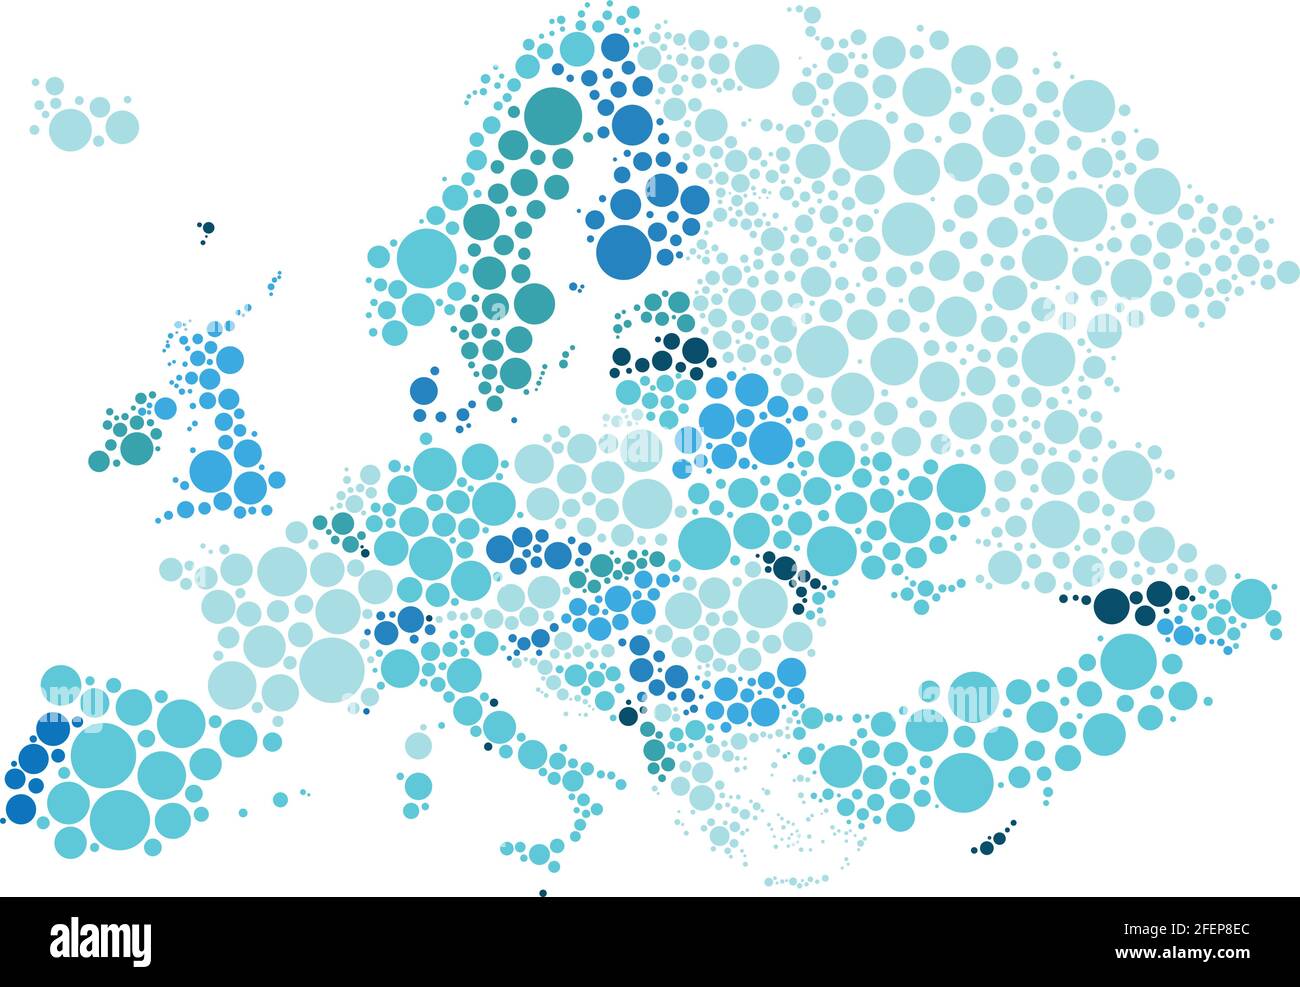 Illustrazione vettoriale della mappa politica dell'Europa disegnata con diverse dimensioni e toni di punti blu. Illustrazione Vettoriale